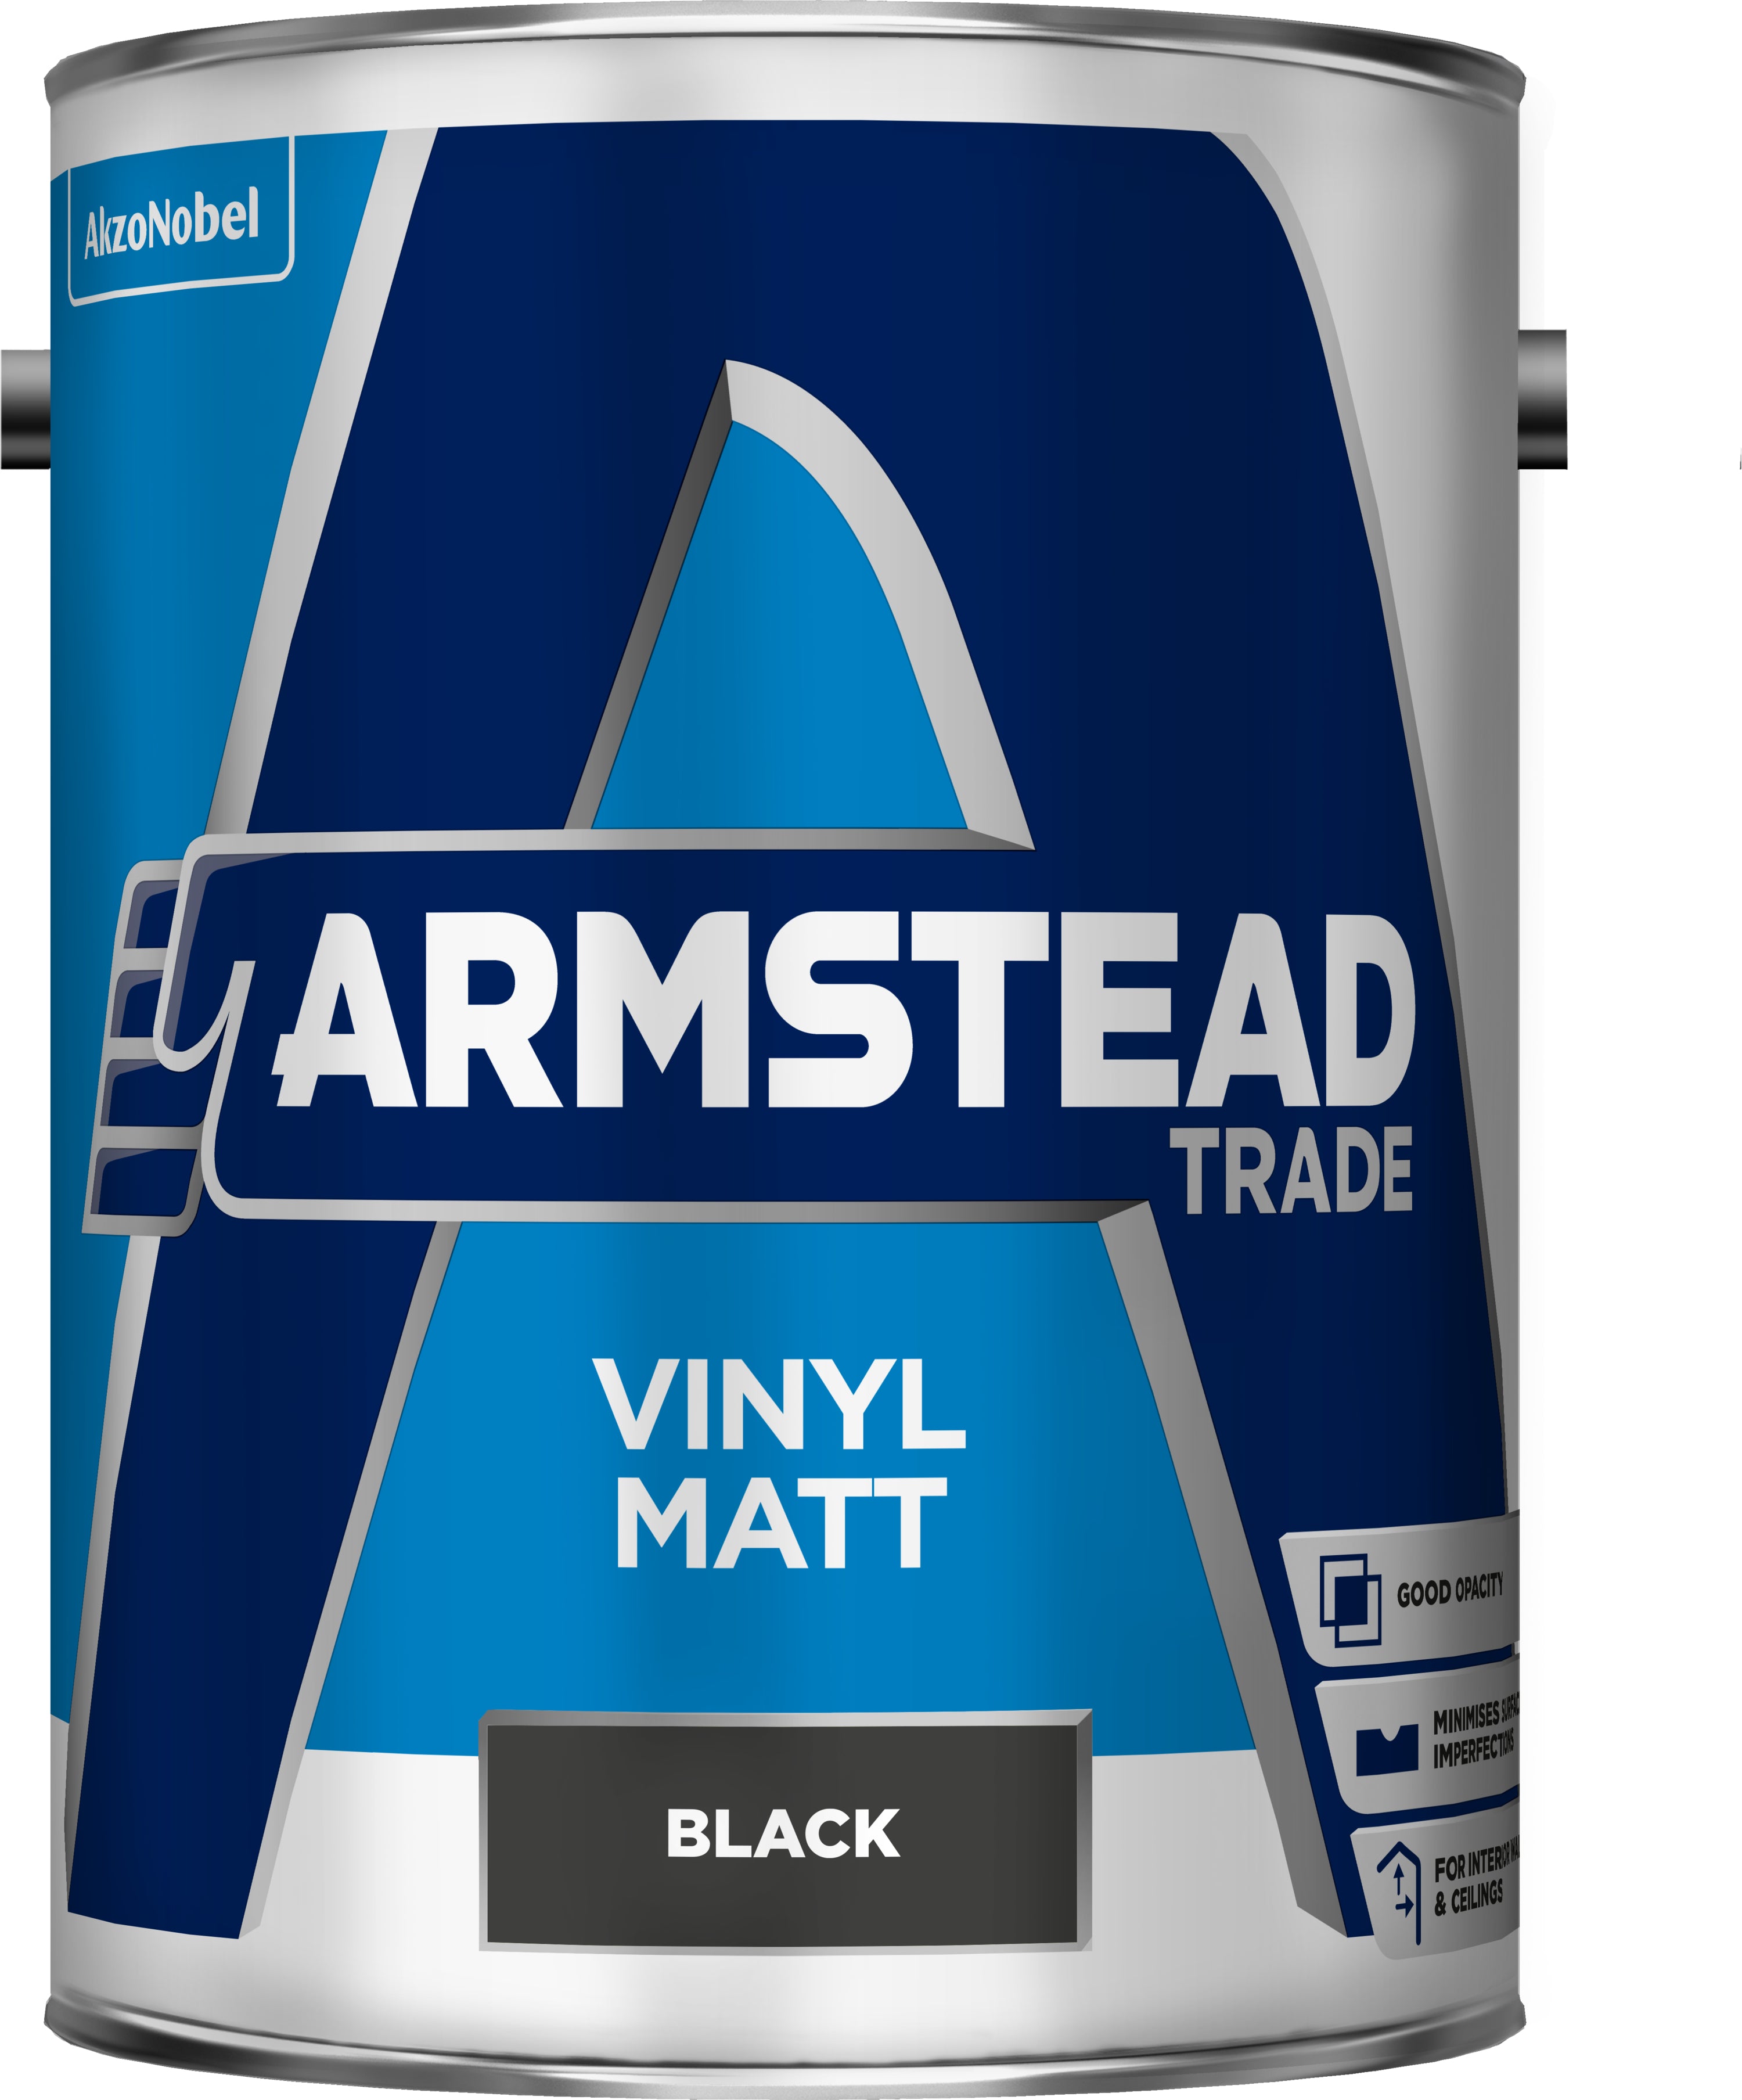 Armstead Trade Vinyl Matt Black 5L